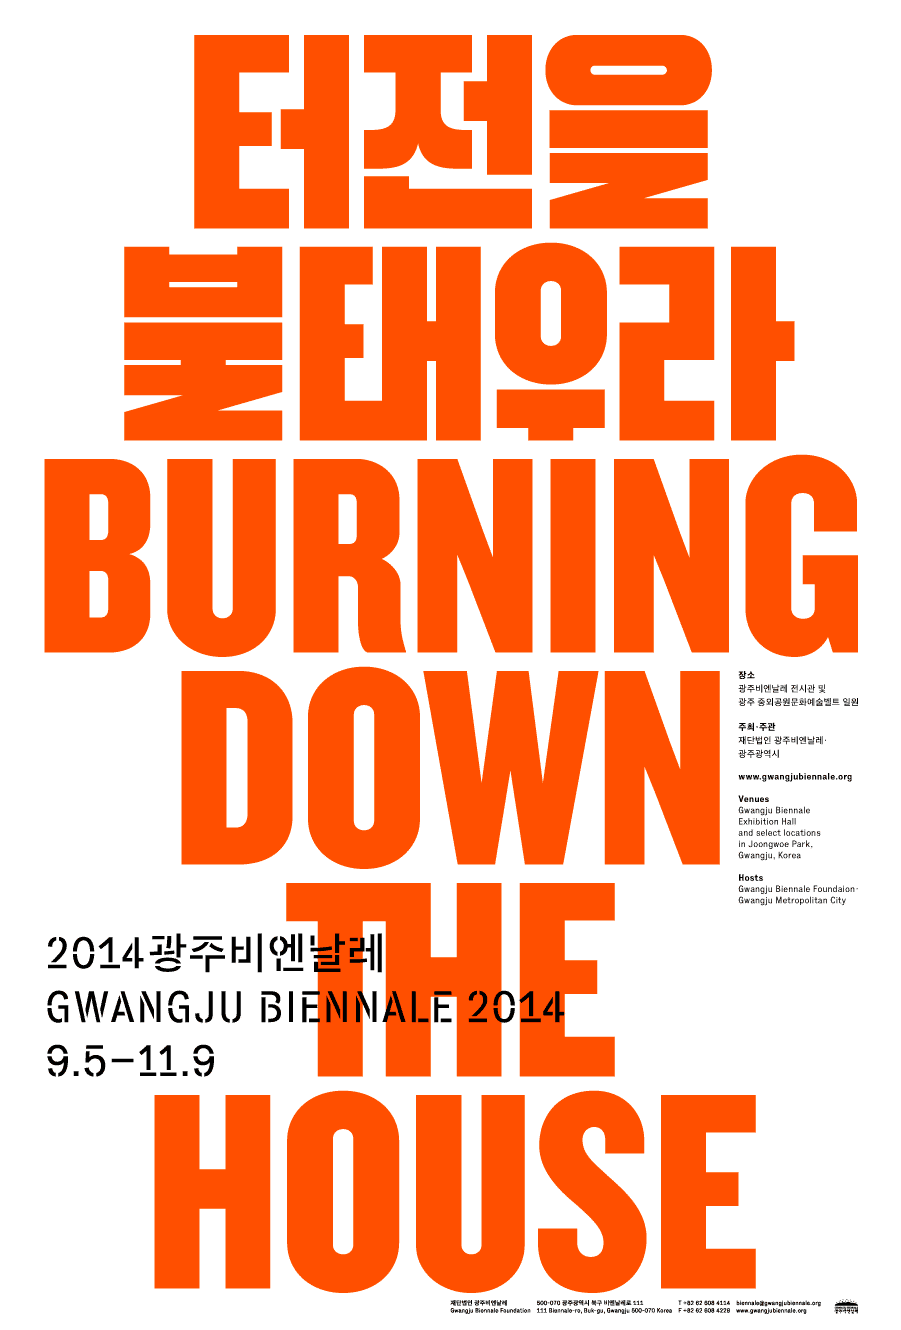 Gwangju Biennale 2014: Posters